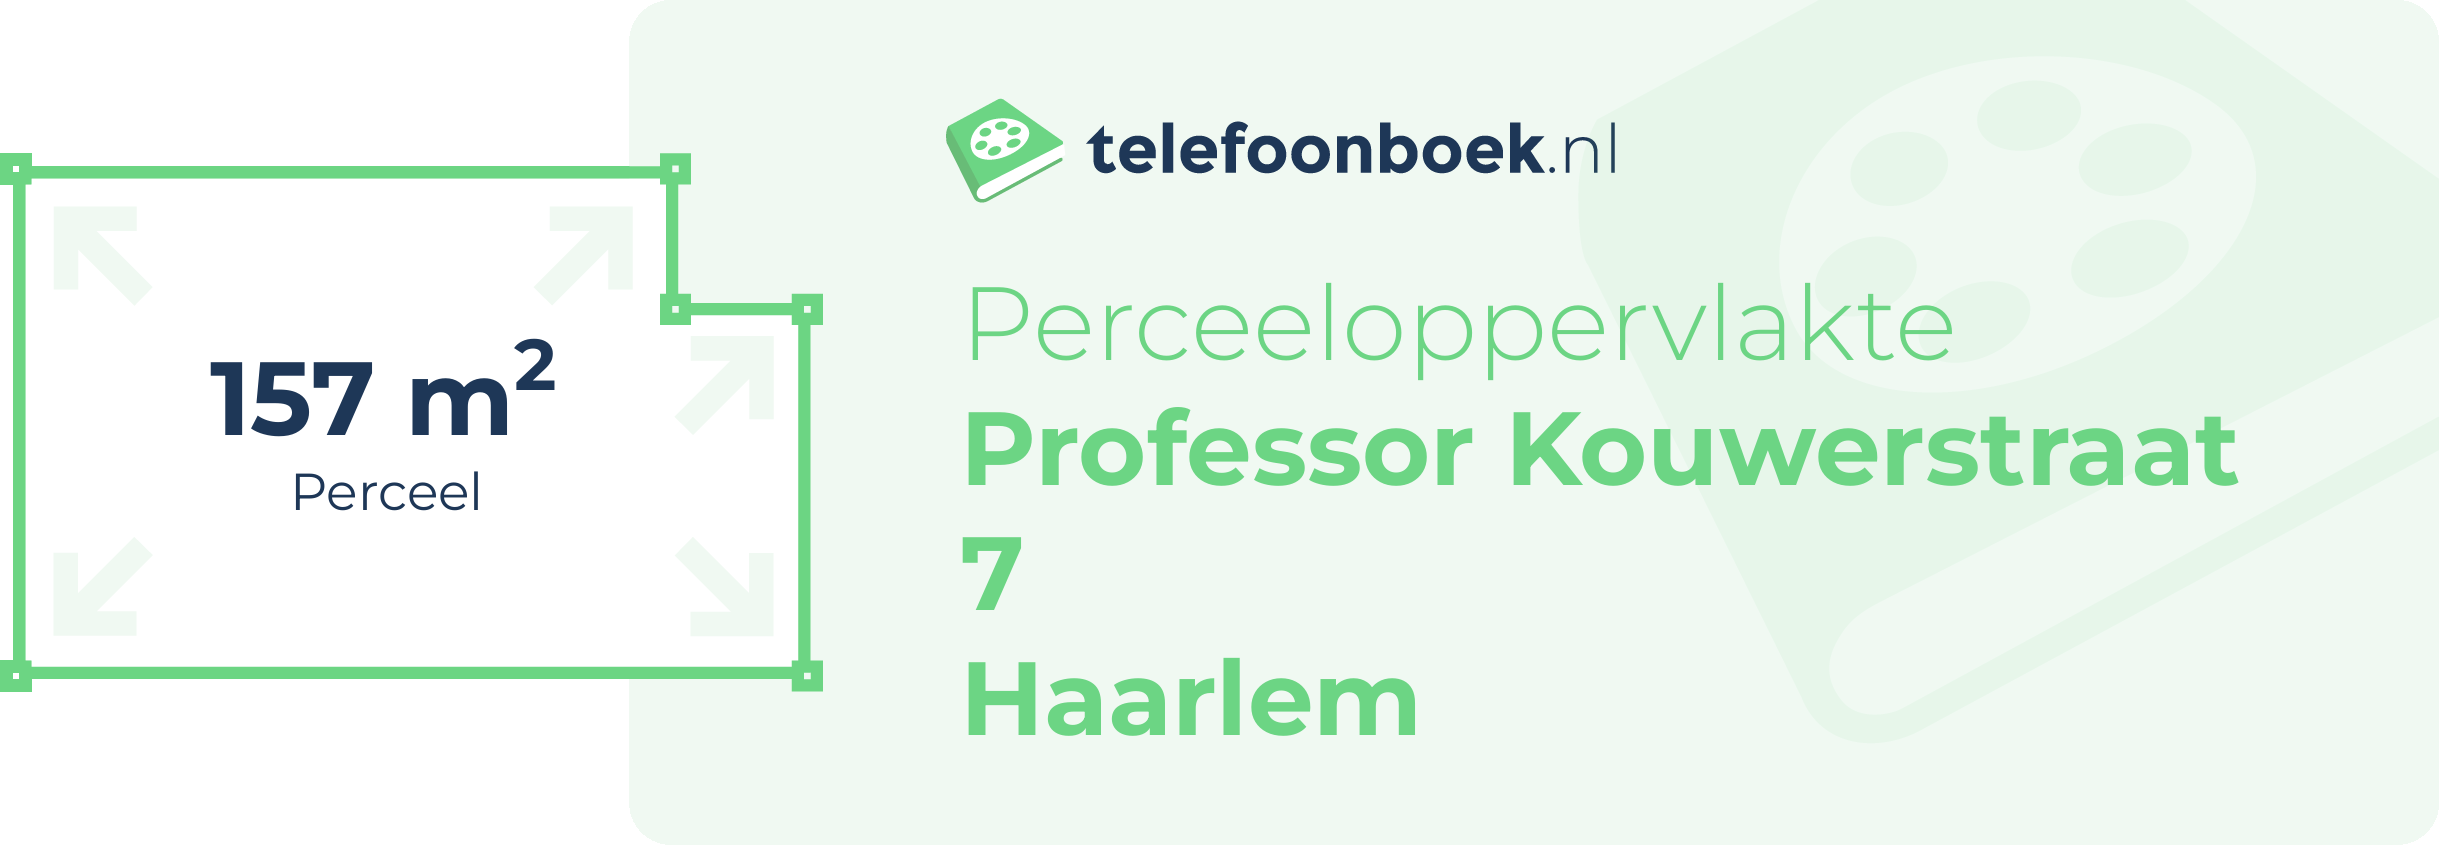 Perceeloppervlakte Professor Kouwerstraat 7 Haarlem